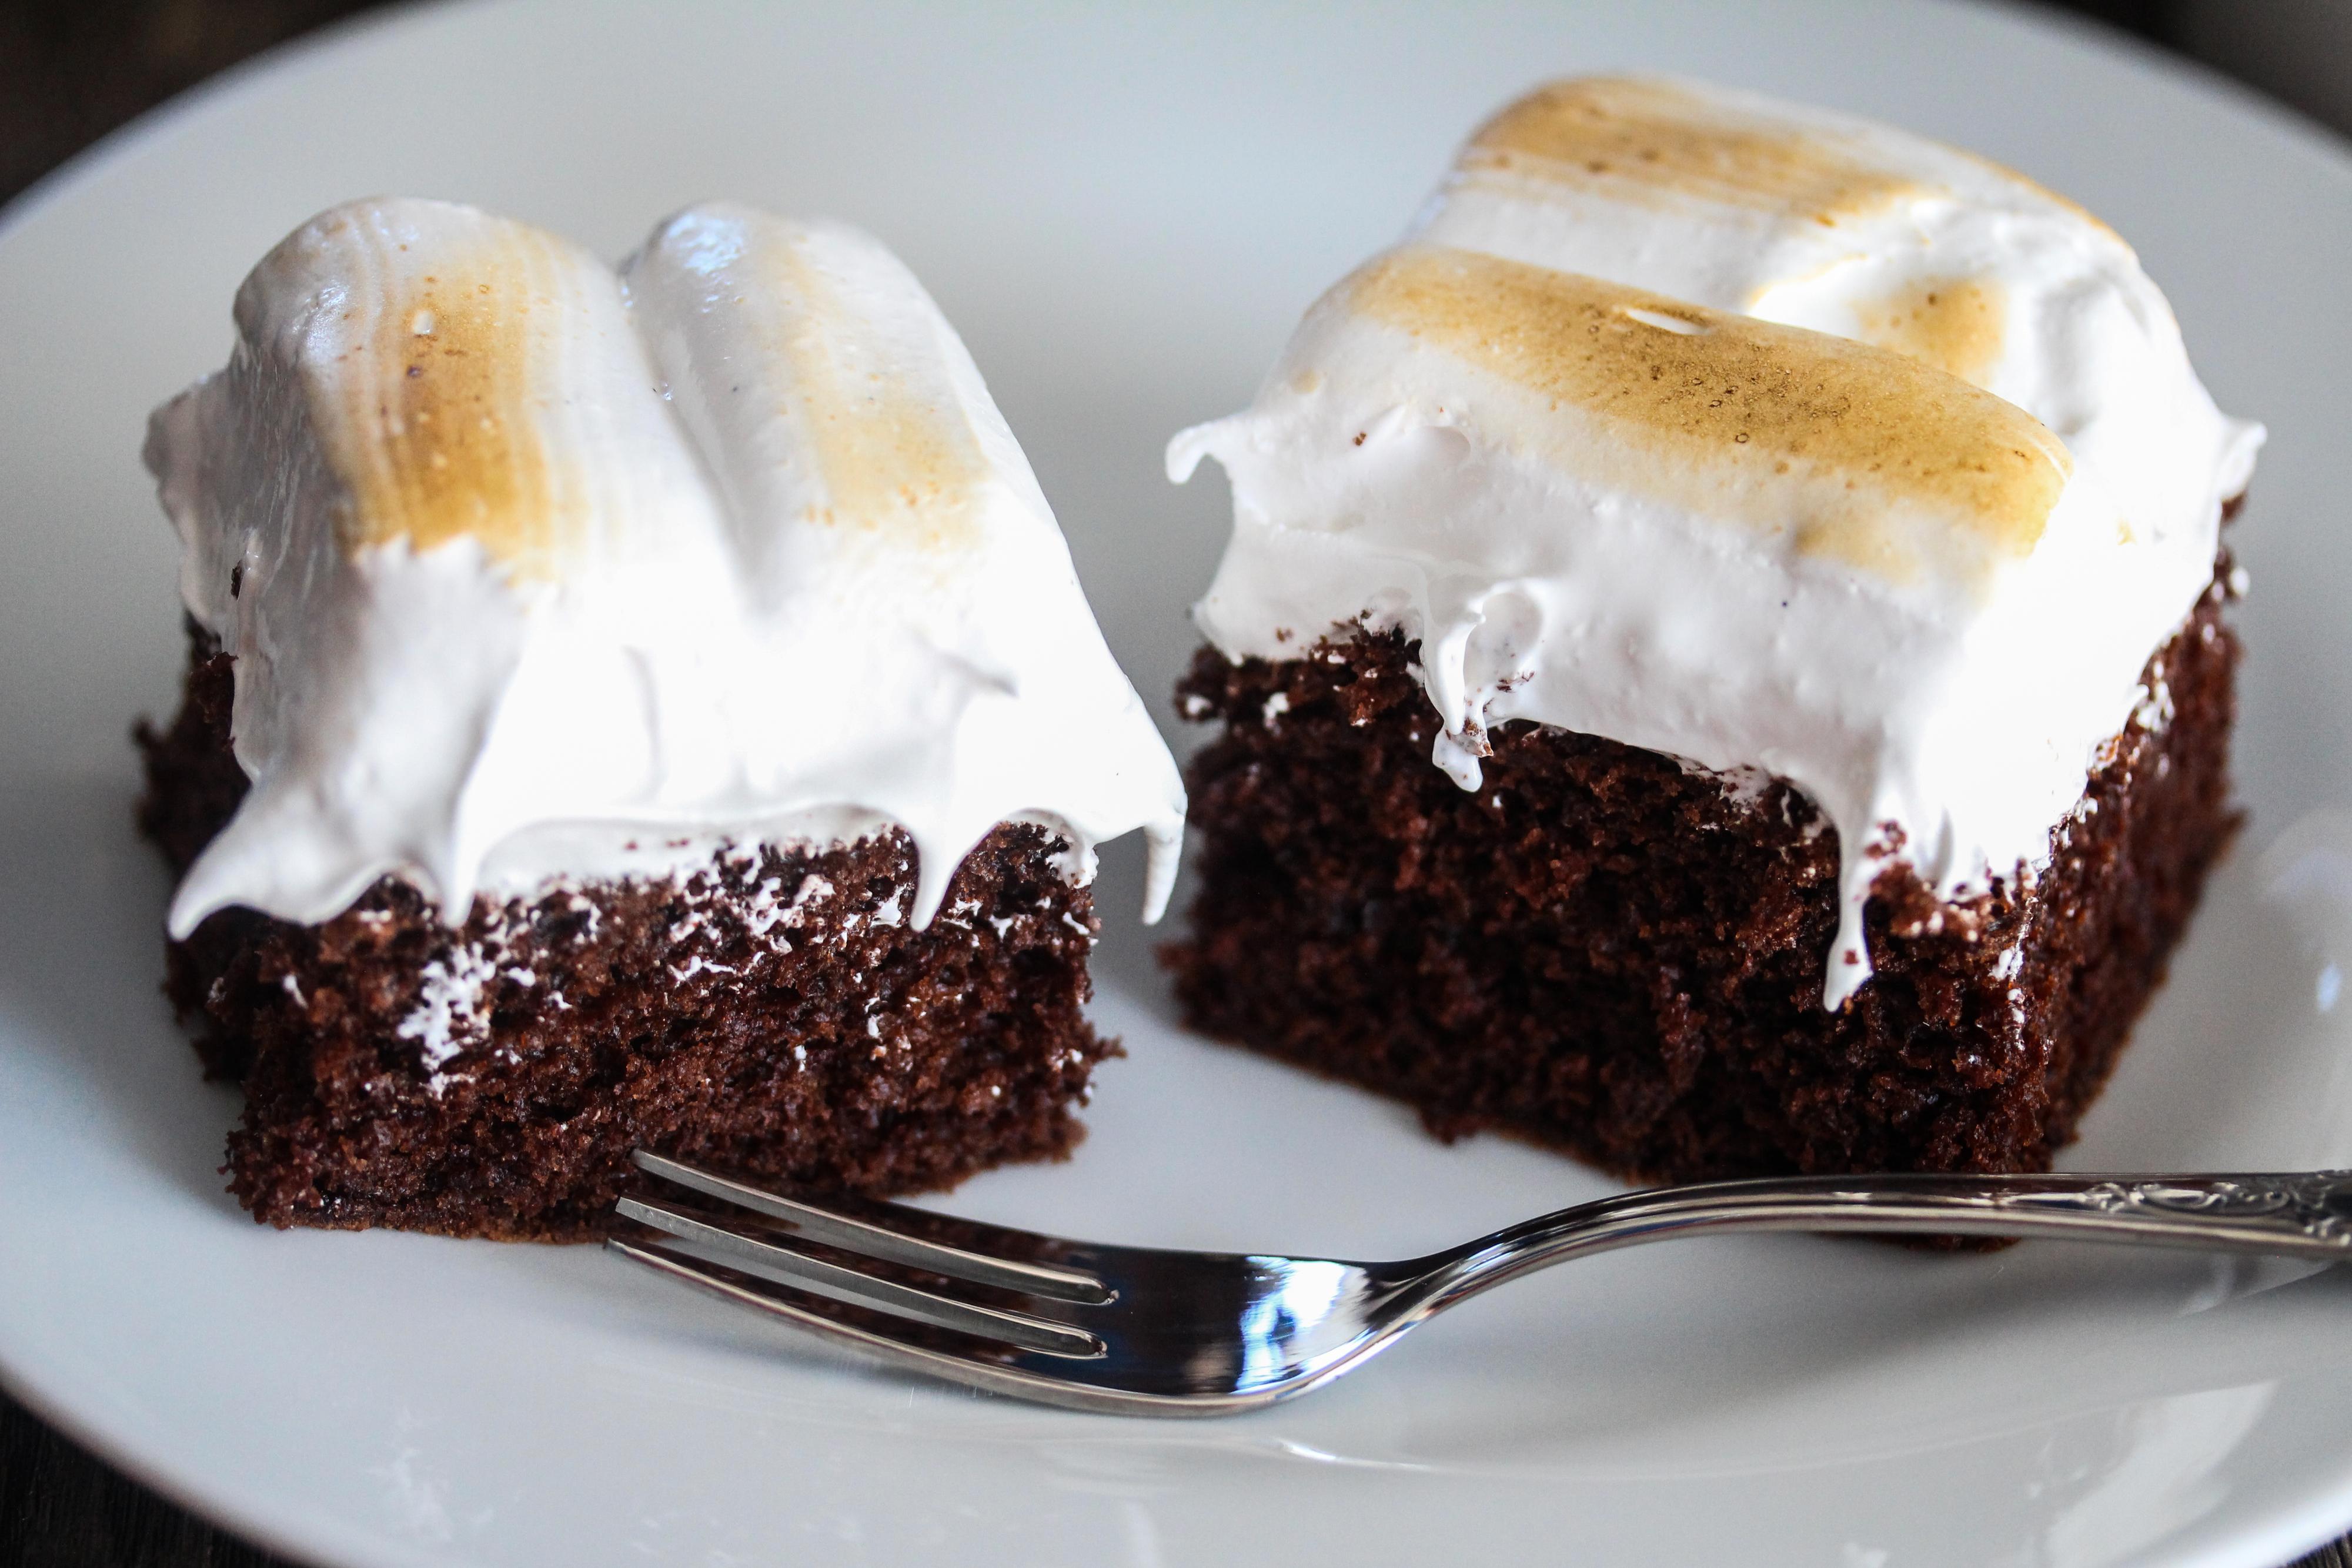 Smør eller sprøyt marengskremen straks på den kalde sjokoladekaken. Bruk en gassbrenner for å grille toppen av marengsen så den får gyllenbrune partier. 